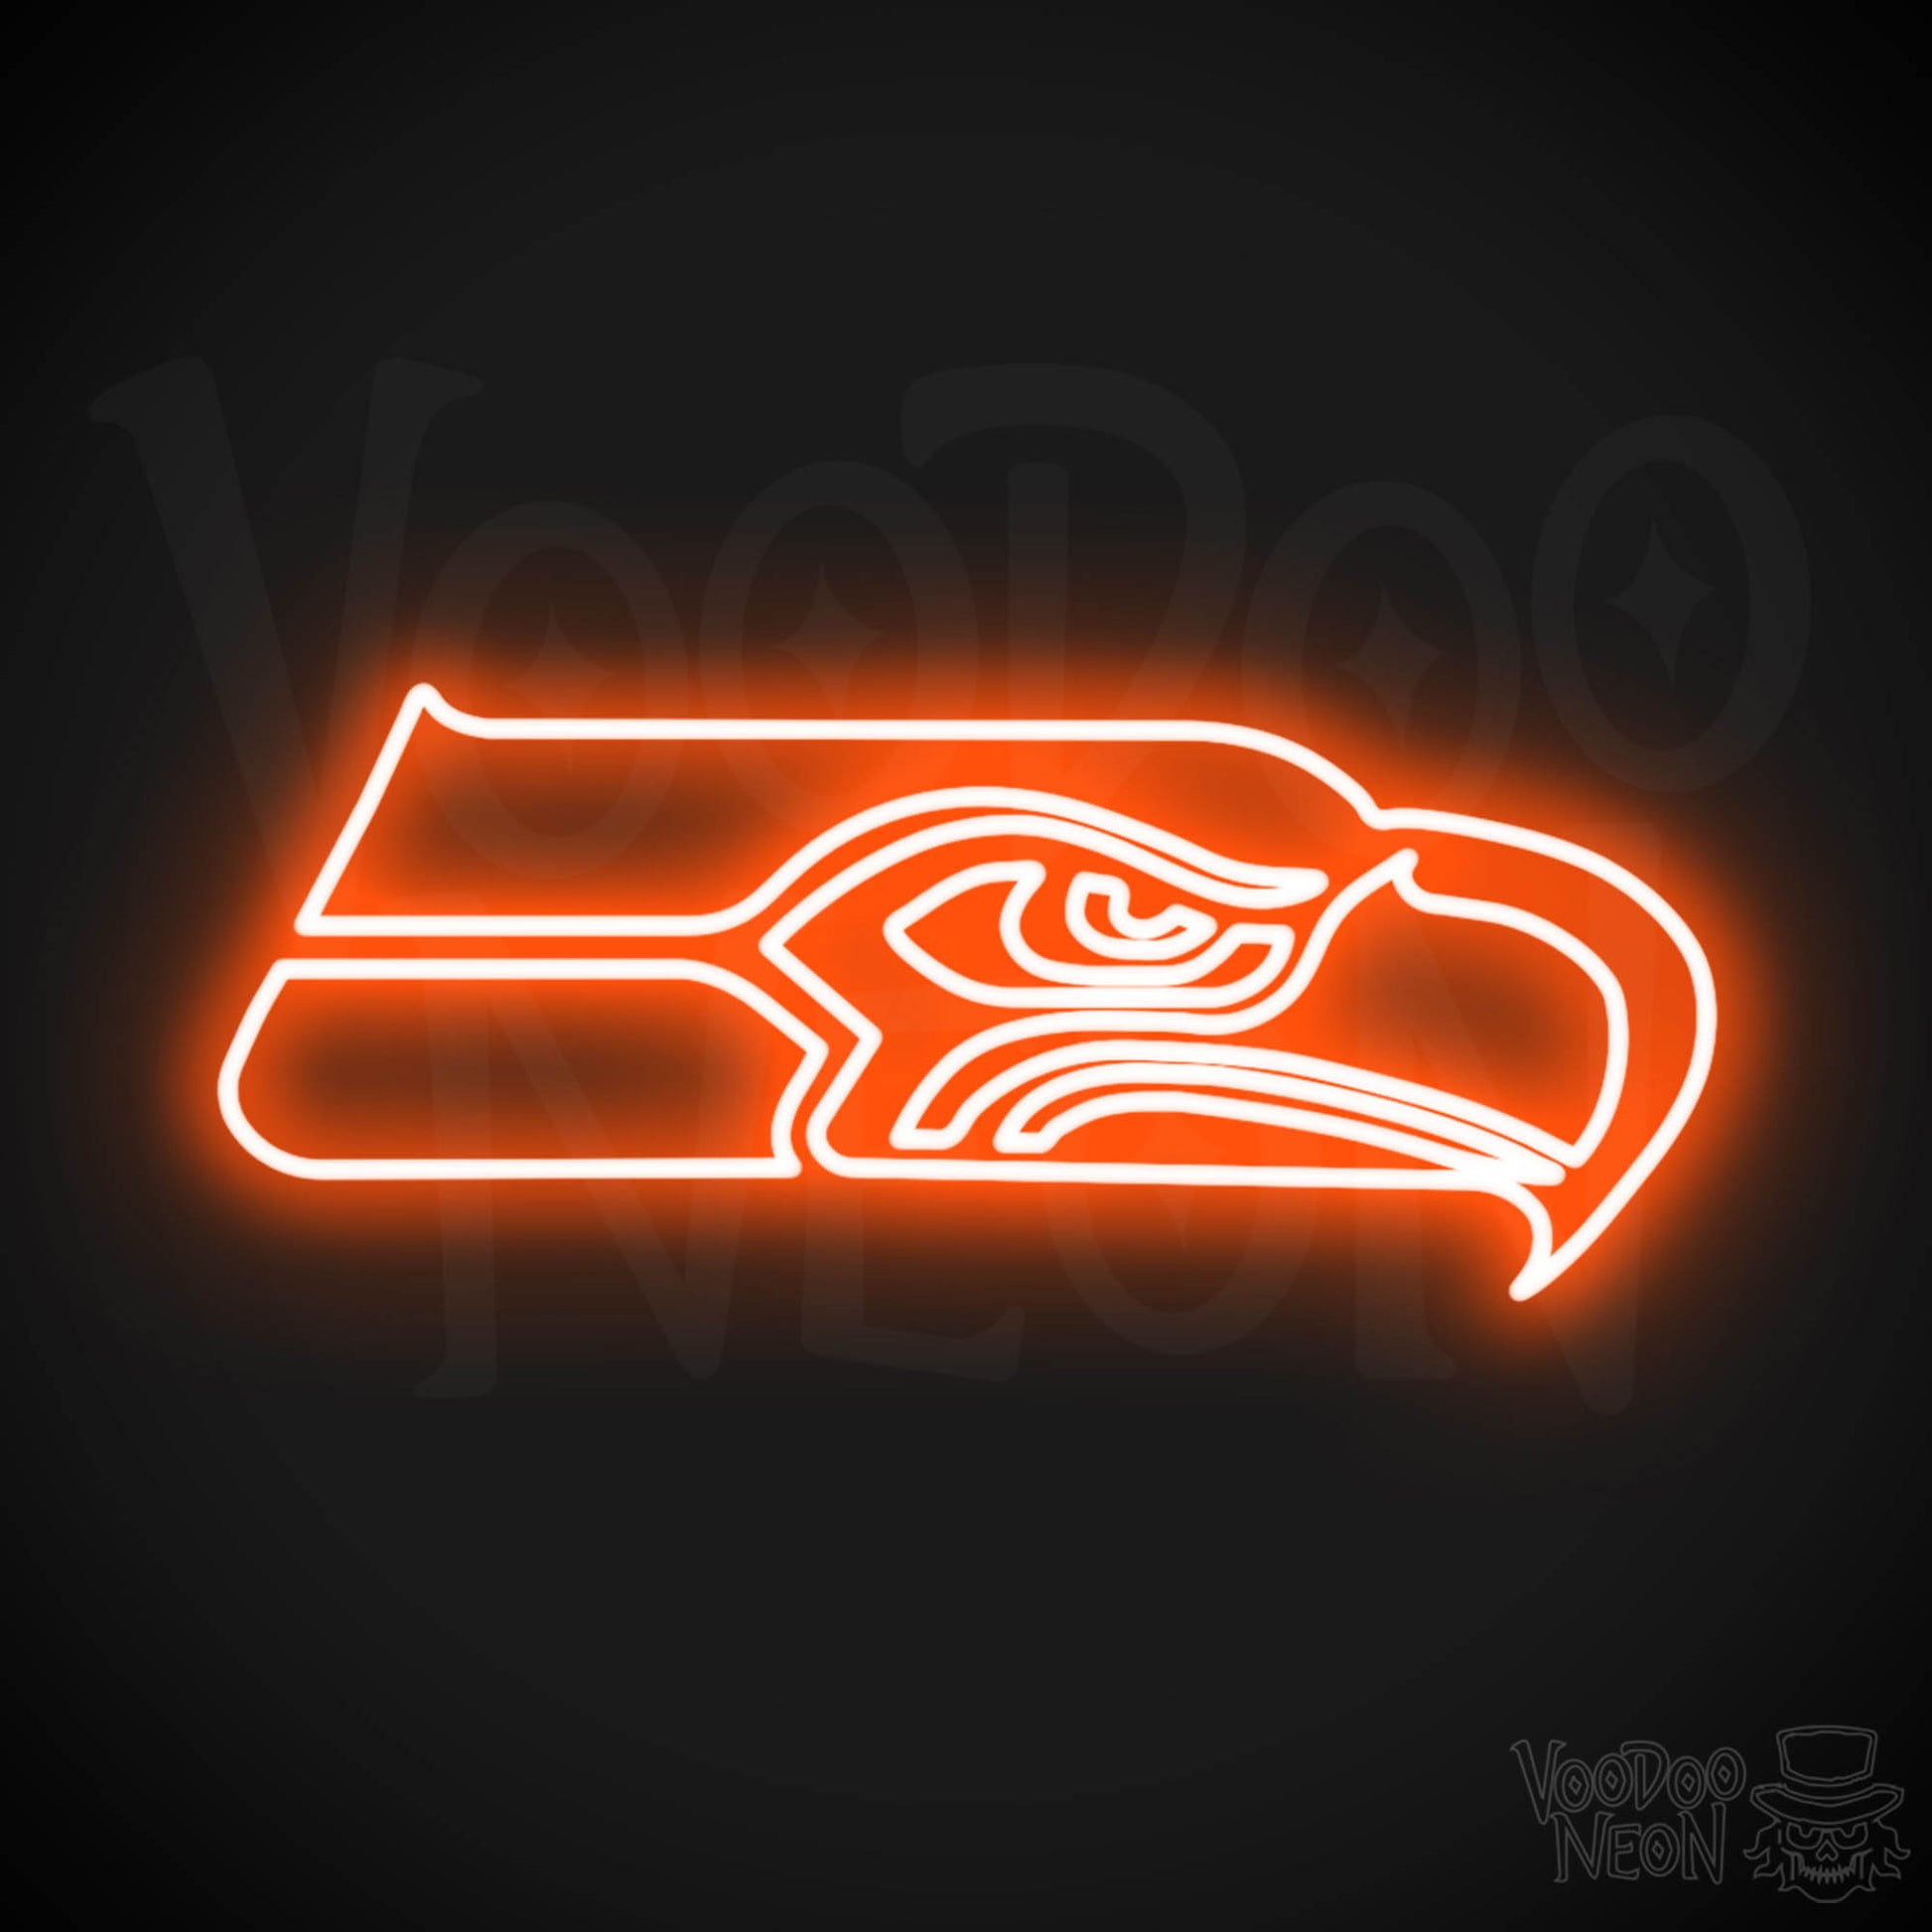 Seattle Seahawks Neon Sign - Seattle Seahawks Sign - Neon Seahawks Logo Wall Art - Color Orange